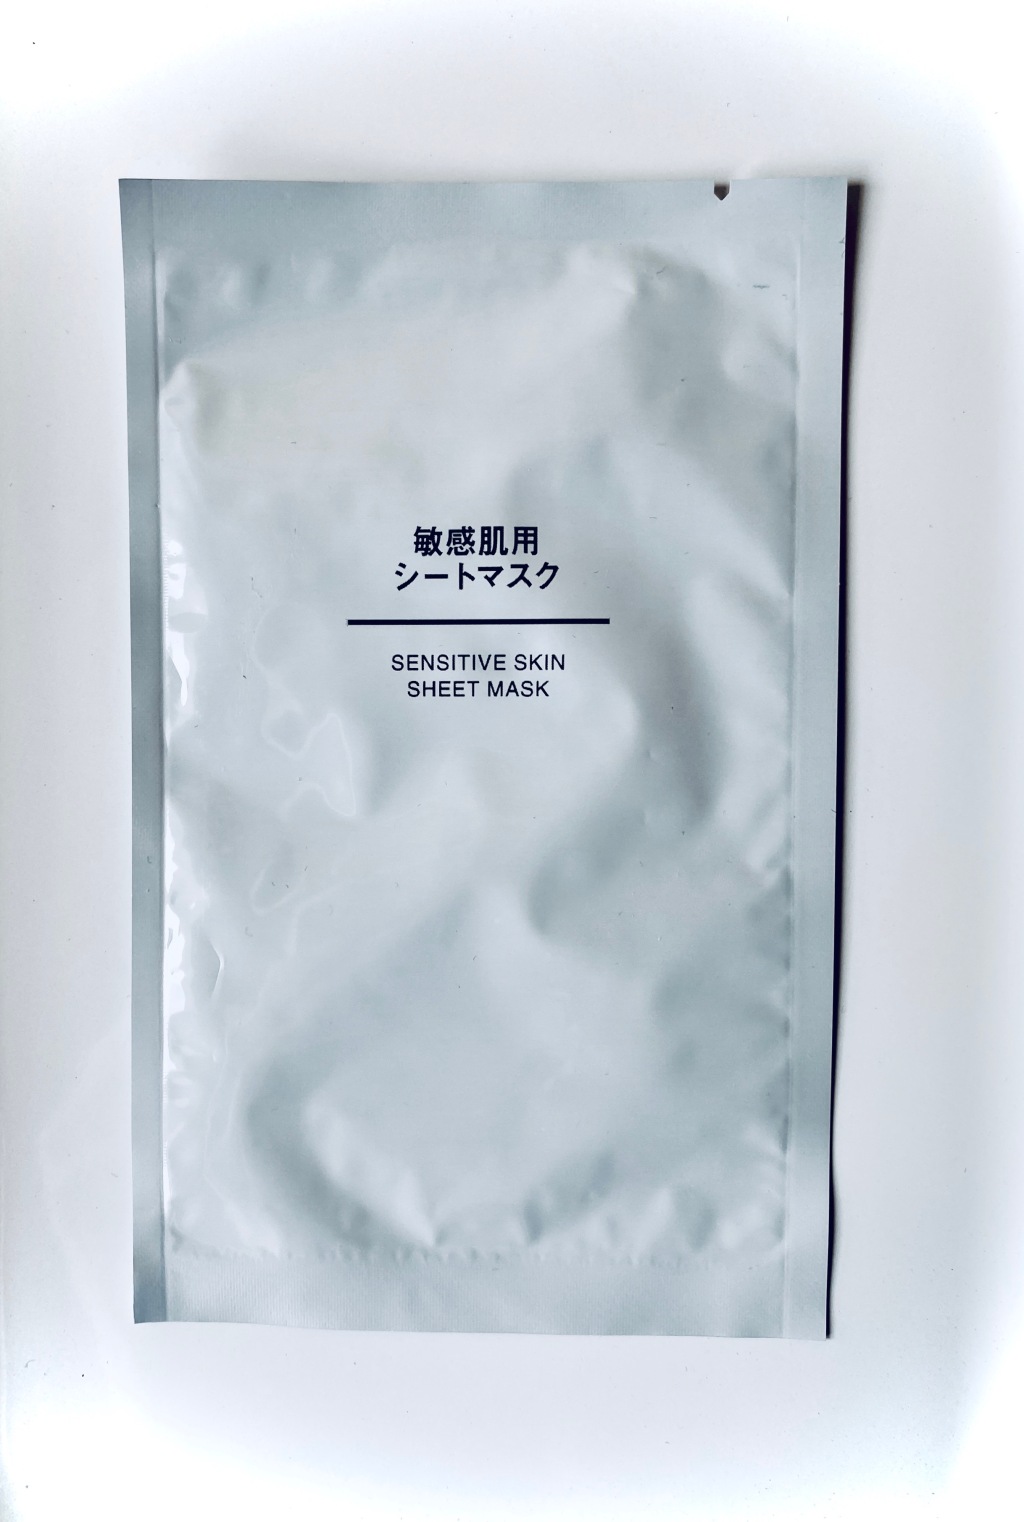 Muji Sensitive Skin Sheet Mask – Review